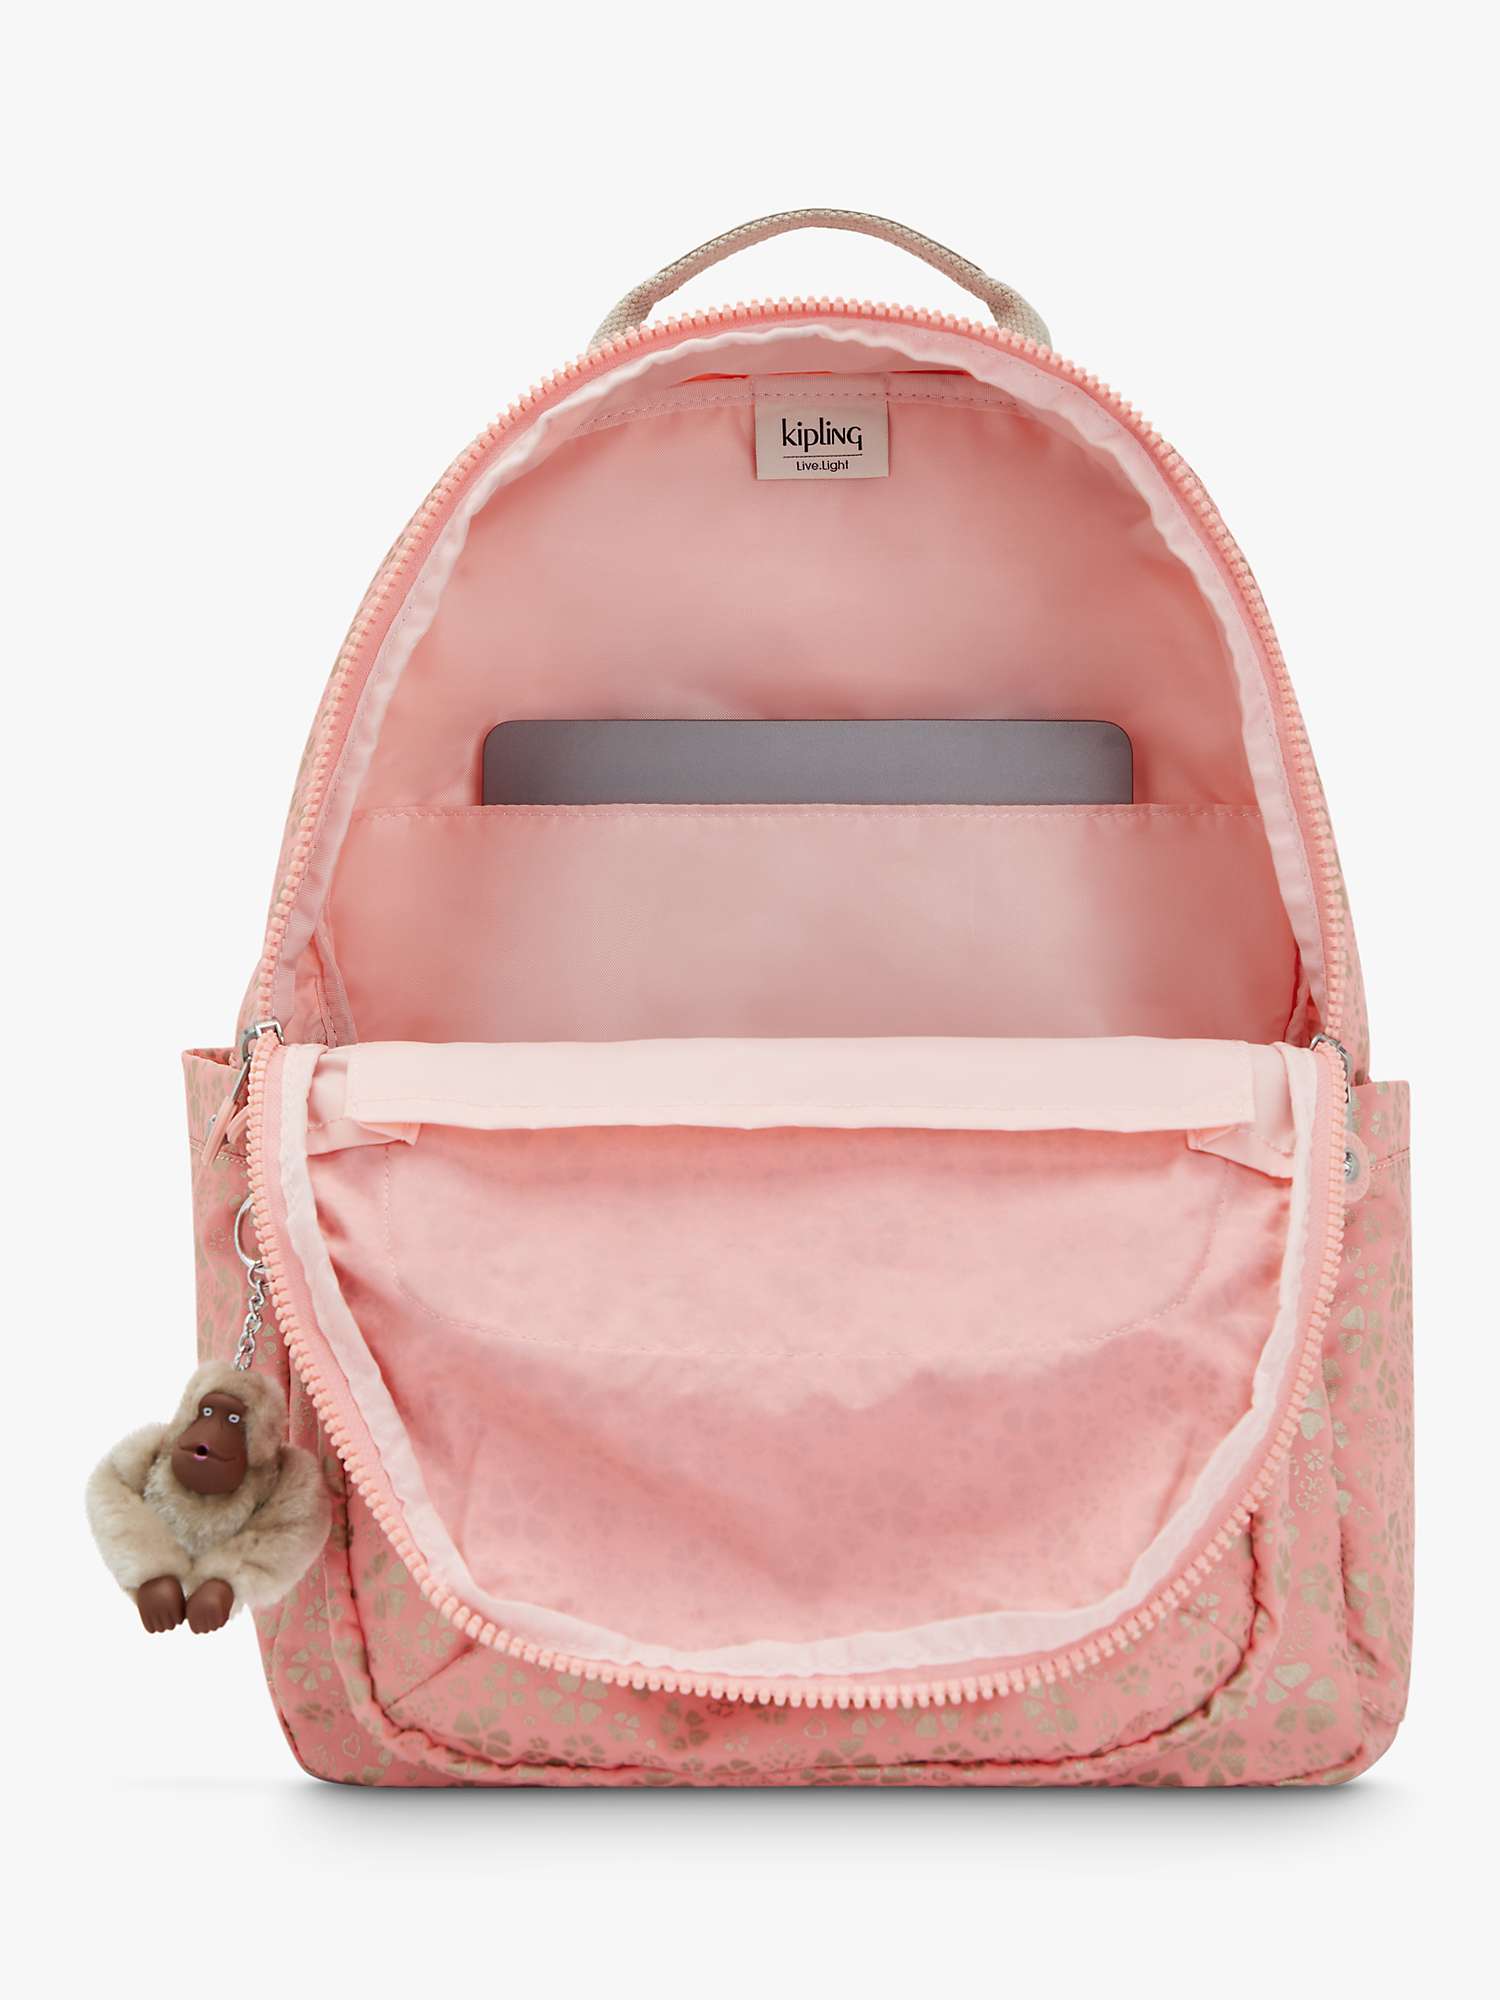 Buy Kipling Seoul Large Backpack, Sweet MetFloral Online at johnlewis.com